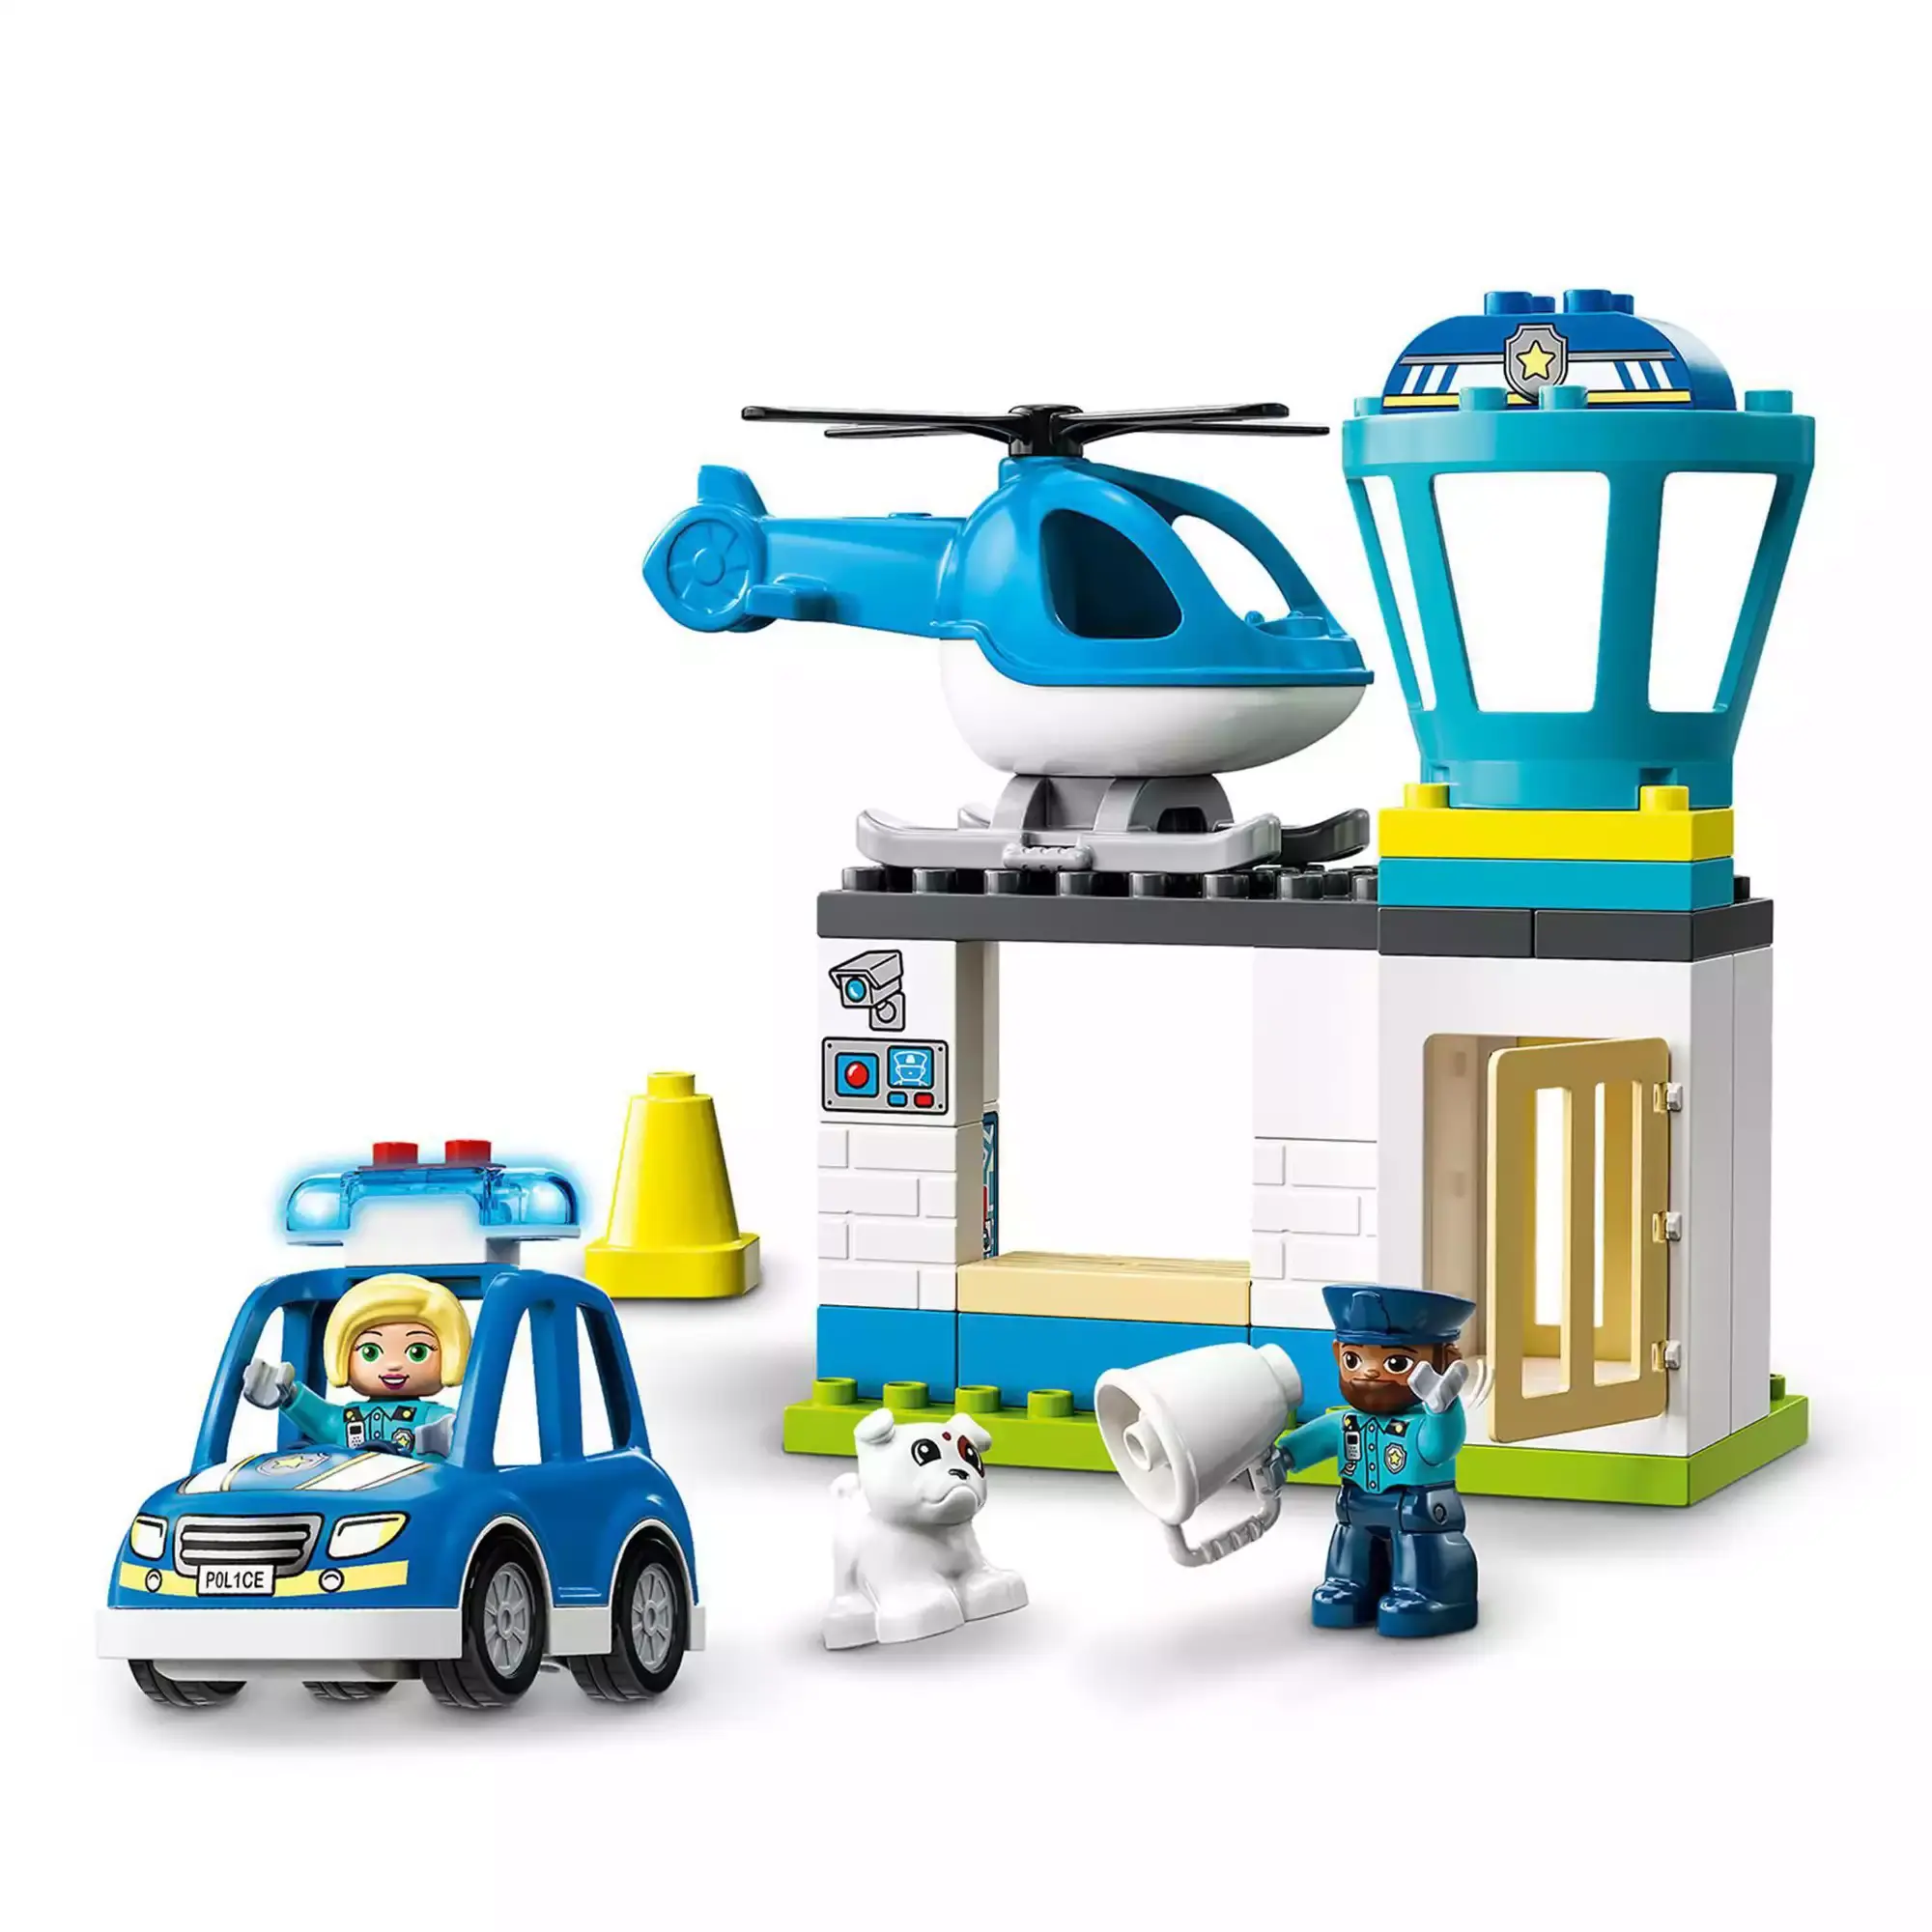 10959 Polizeistation mit Hubschrauber LEGO duplo 2000582874301 1